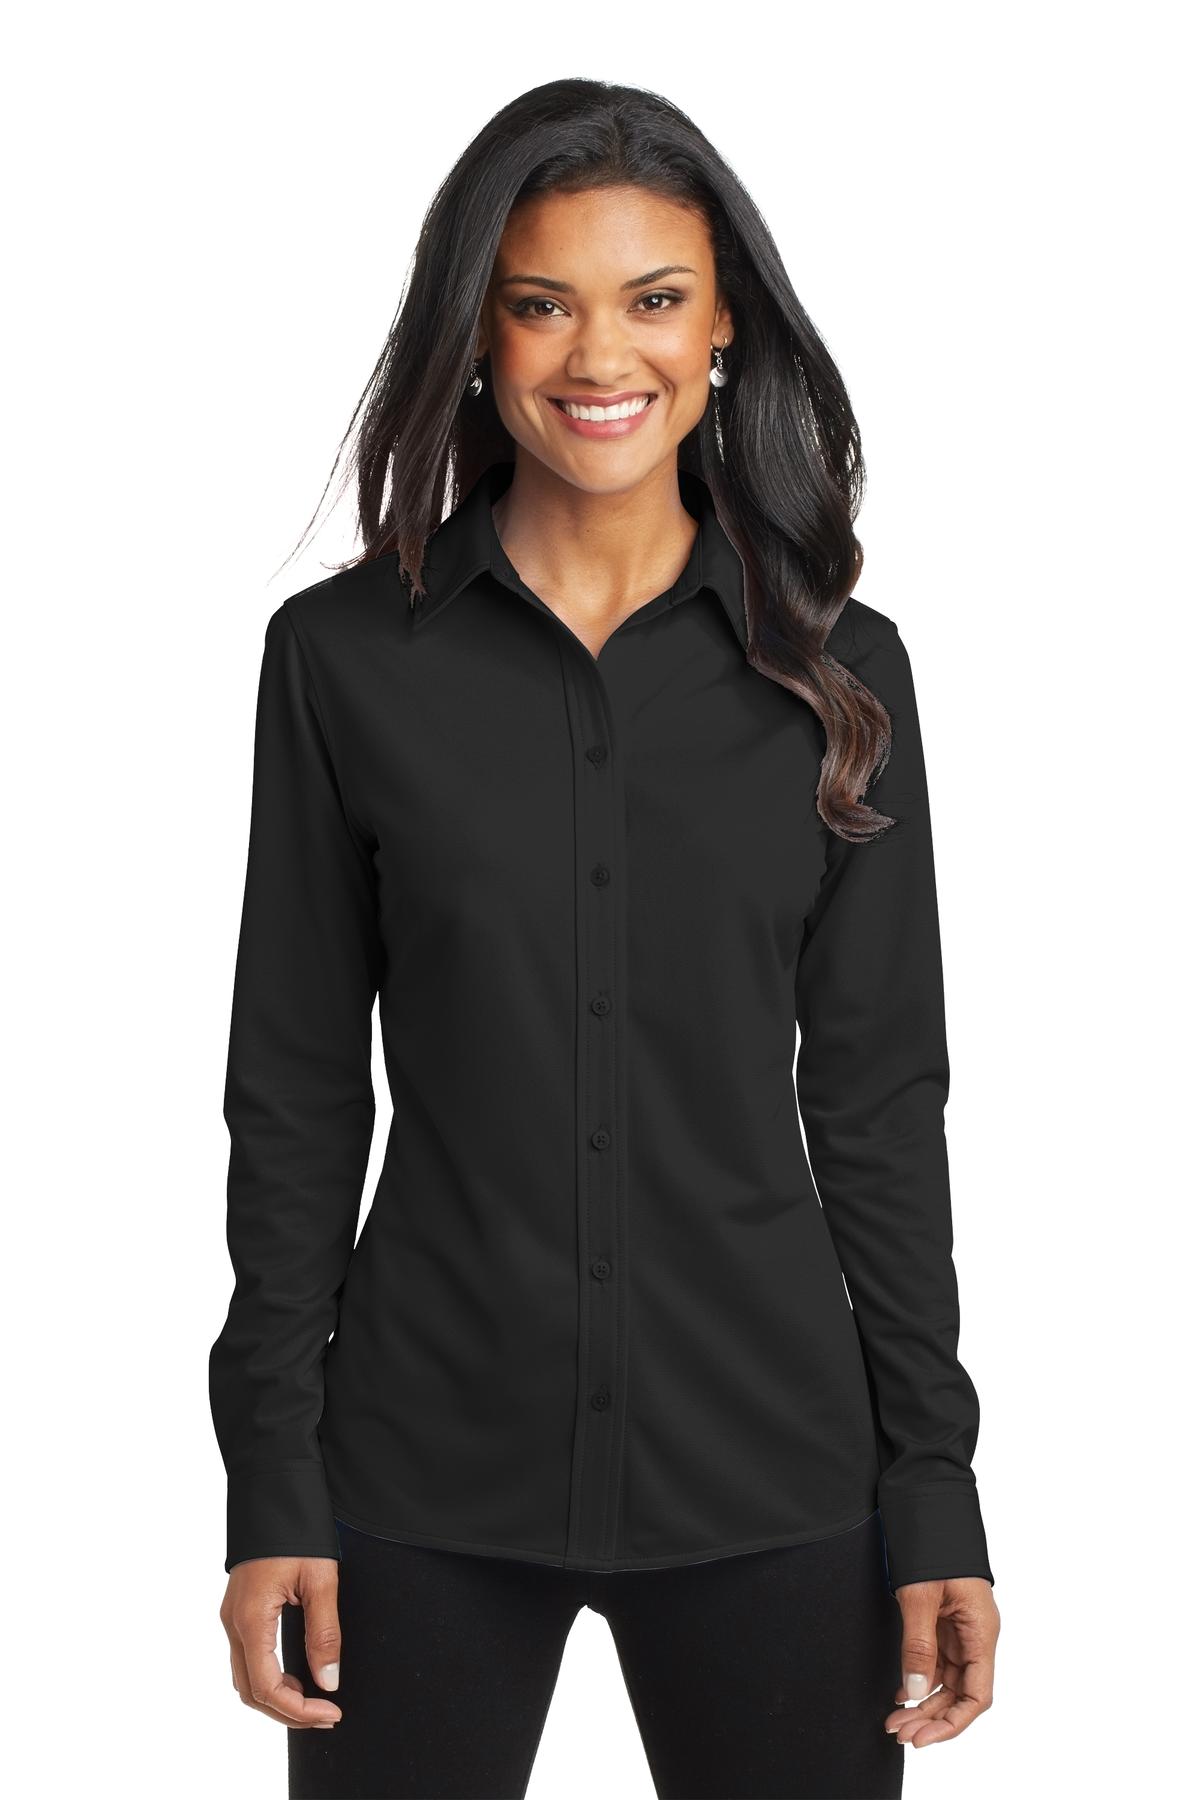 Port Authority® L570 - Ladies Dimension Knit Dress Shirt